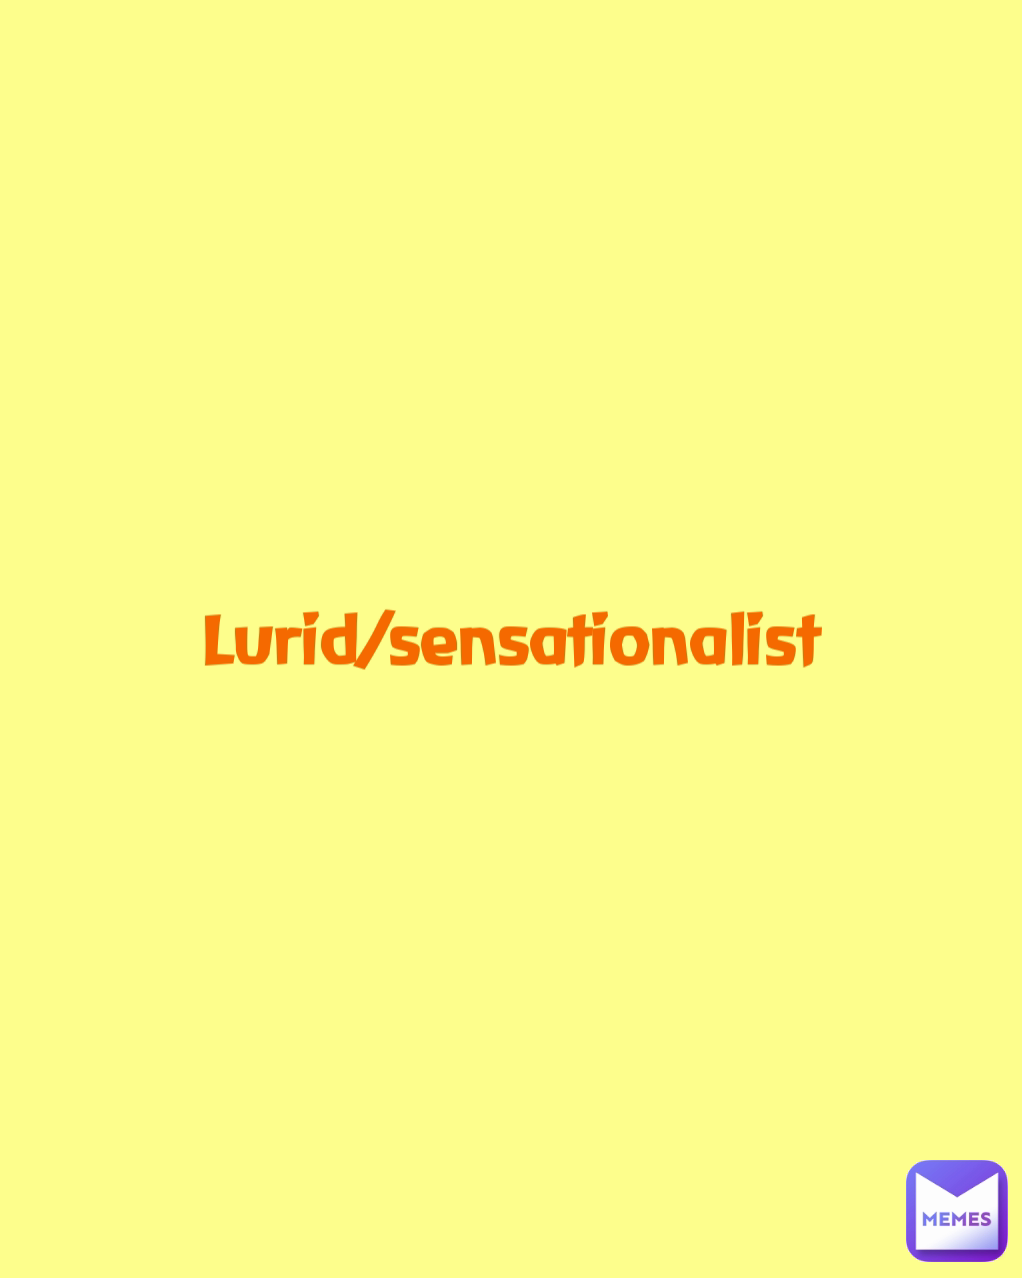 Lurid/sensationalist